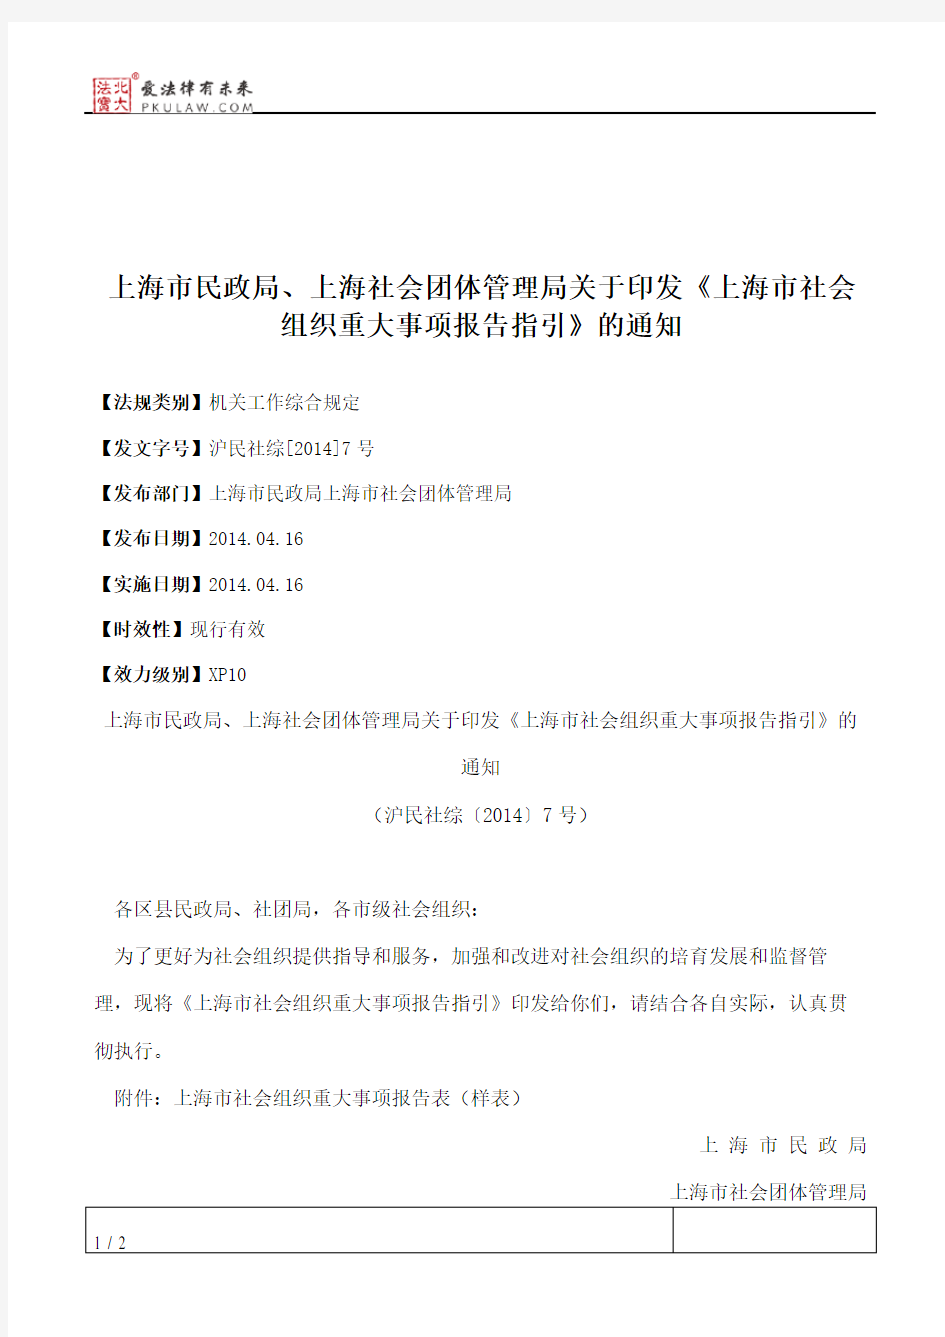 上海市民政局、上海社会团体管理局关于印发《上海市社会组织重大